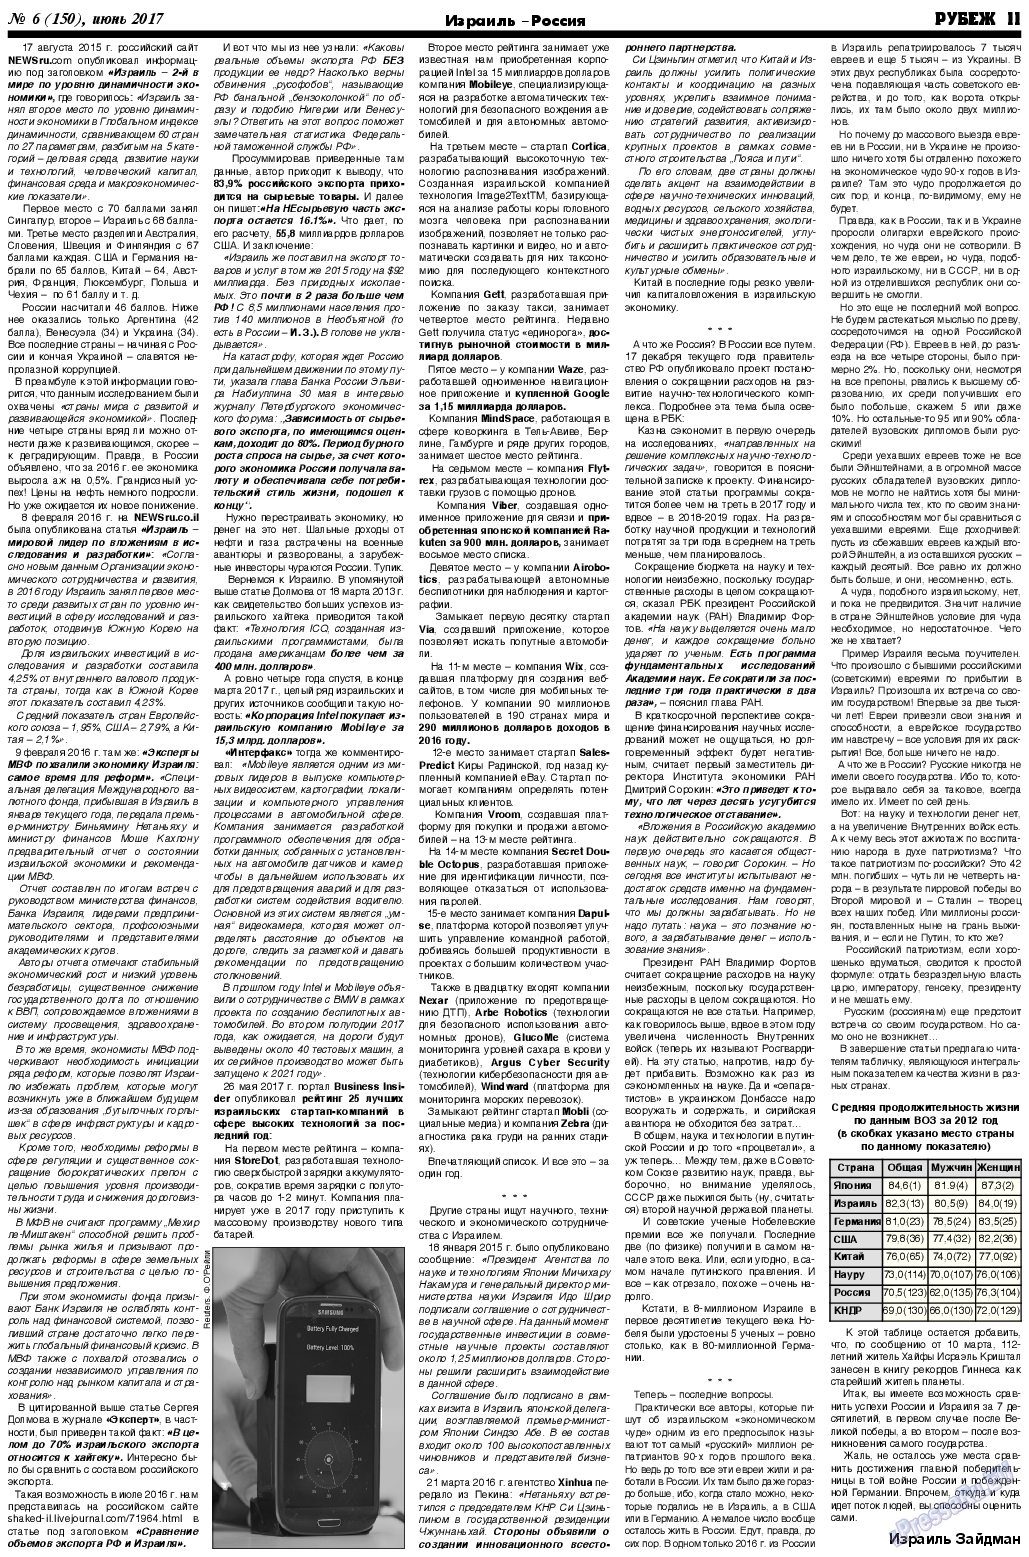 Рубеж (газета). 2017 год, номер 6, стр. 11